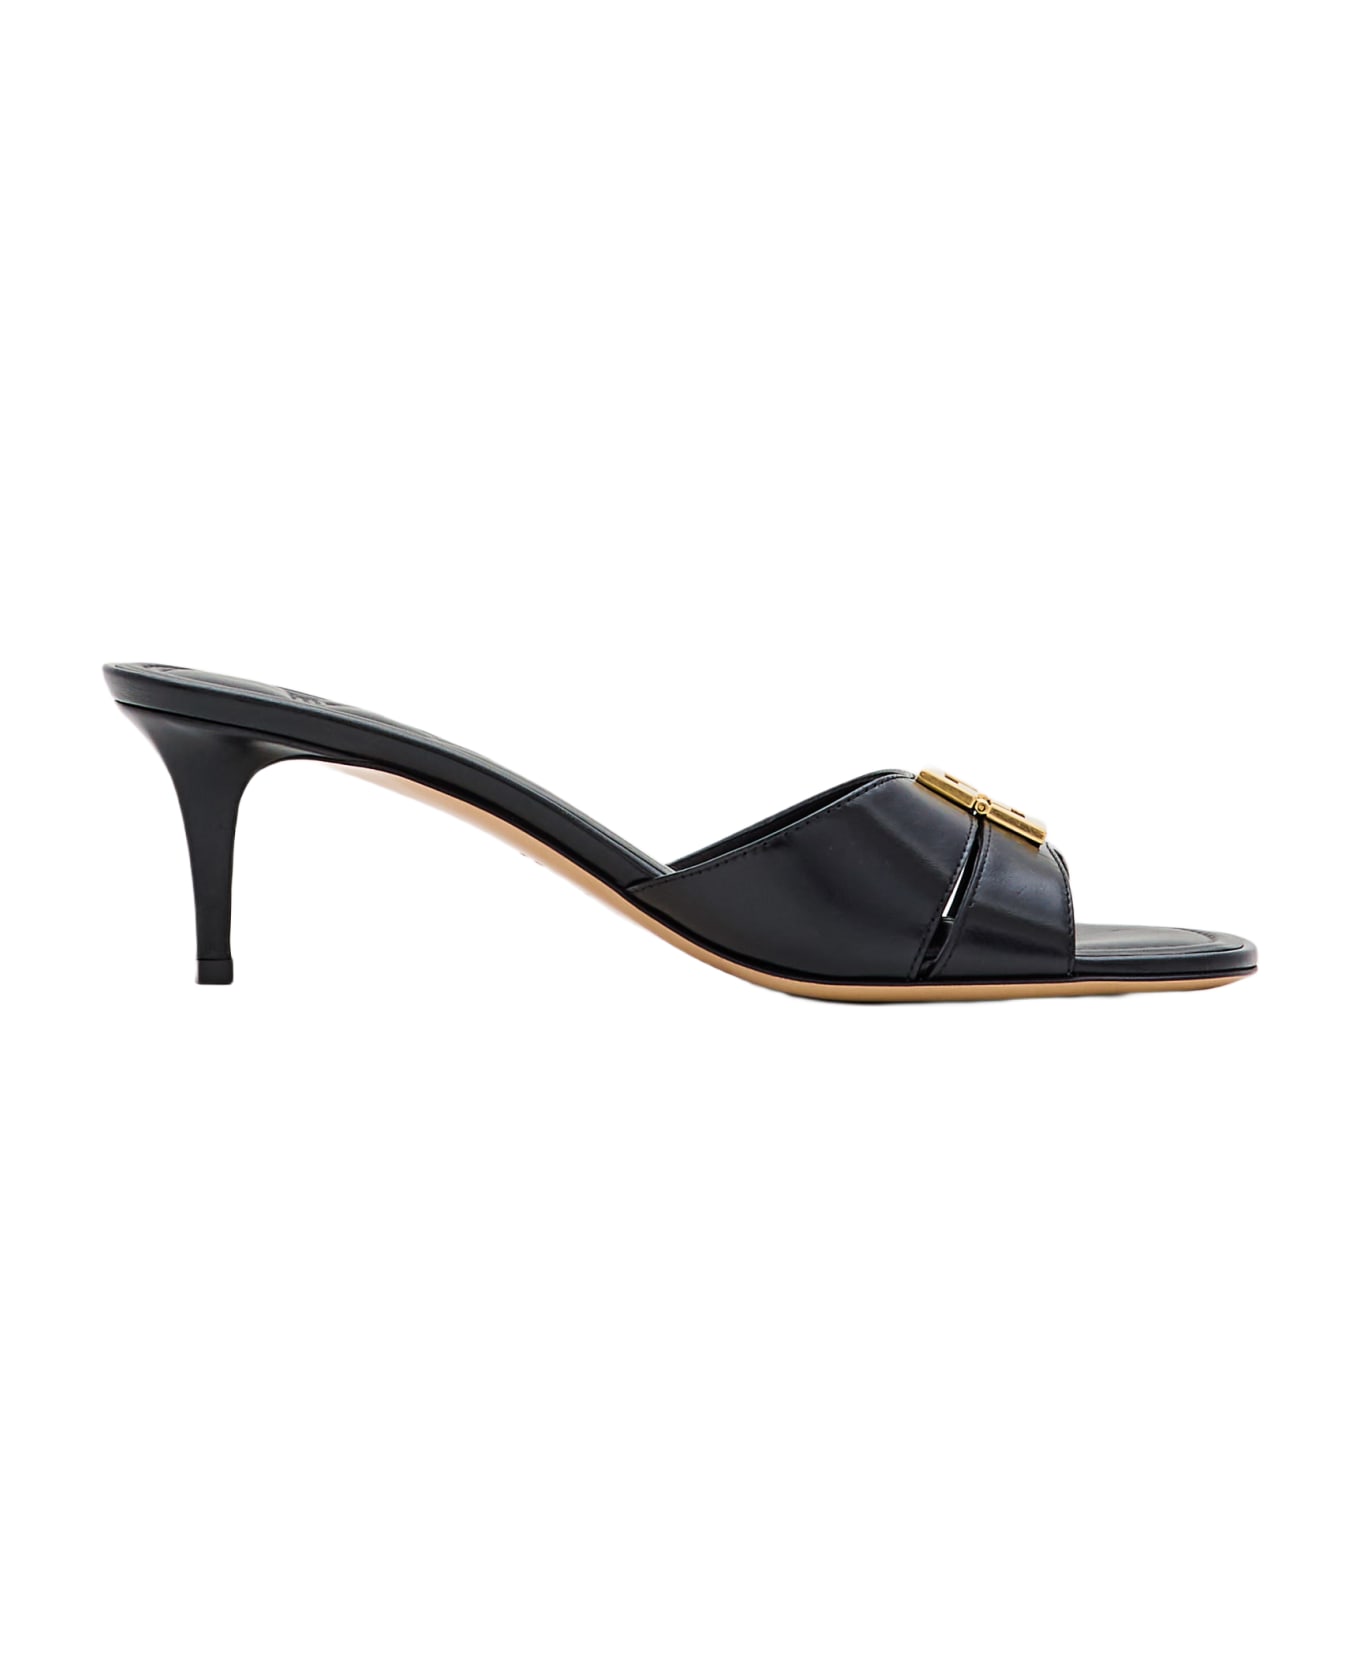 Fendi Slide Patent Leather Heels - Black